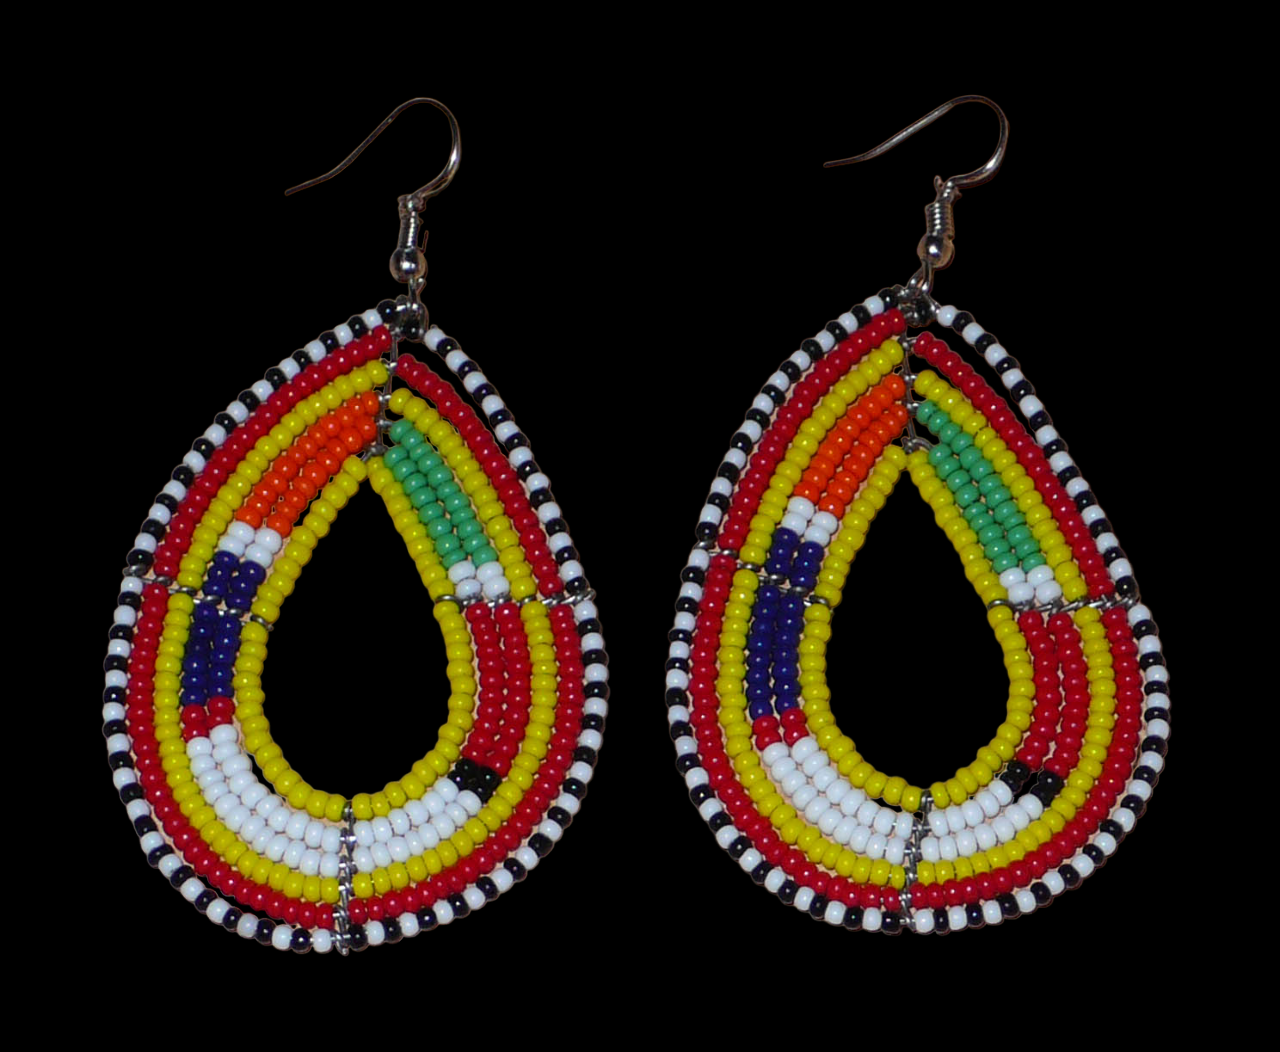 Boucles d'oreilles africaines Massai en perles de rocaille jaunes et multicolores montées en forme de gouttes. Elles mesurent 8 cm de long et 4 cm de large et se portent avec des crochets en acier inoxydable sur des oreilles percées.